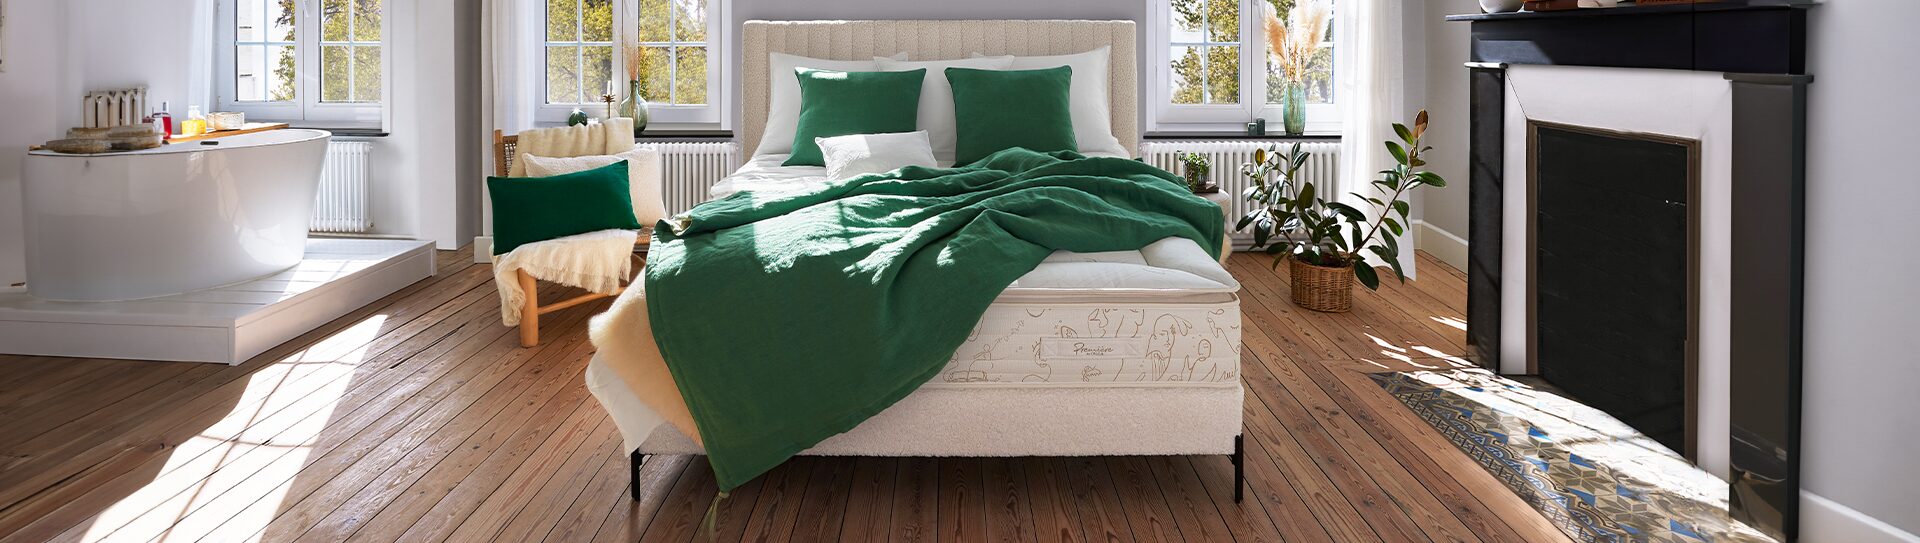 Matelas LORELEY Matelas Lorelei blanc avec sommier blanc, tête de lit blanche, plaid et coussins verts Géant du Meuble